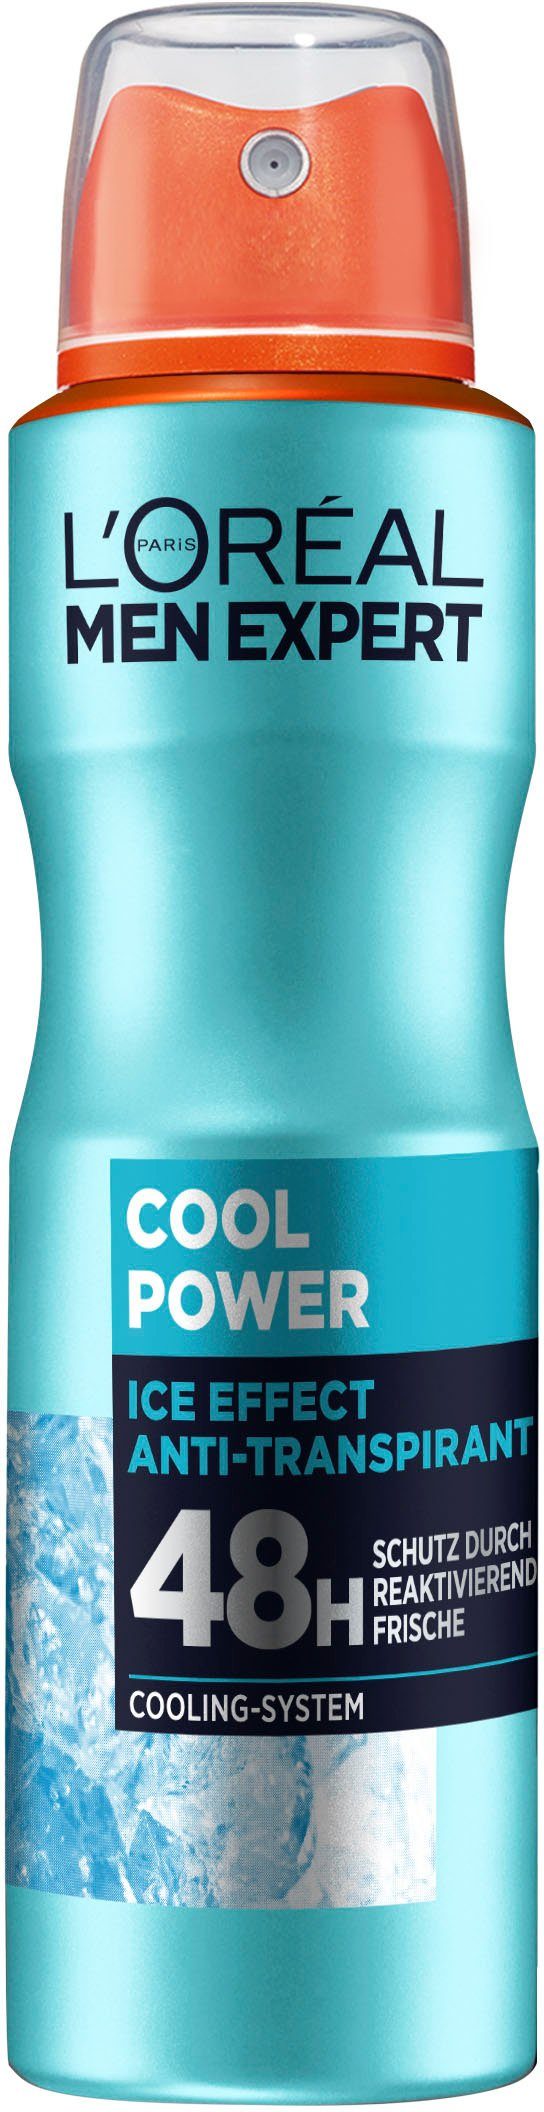 48H Cool Power, PARIS EXPERT L'ORÉAL mit MEN Deo-Spray Cooling-Effekt